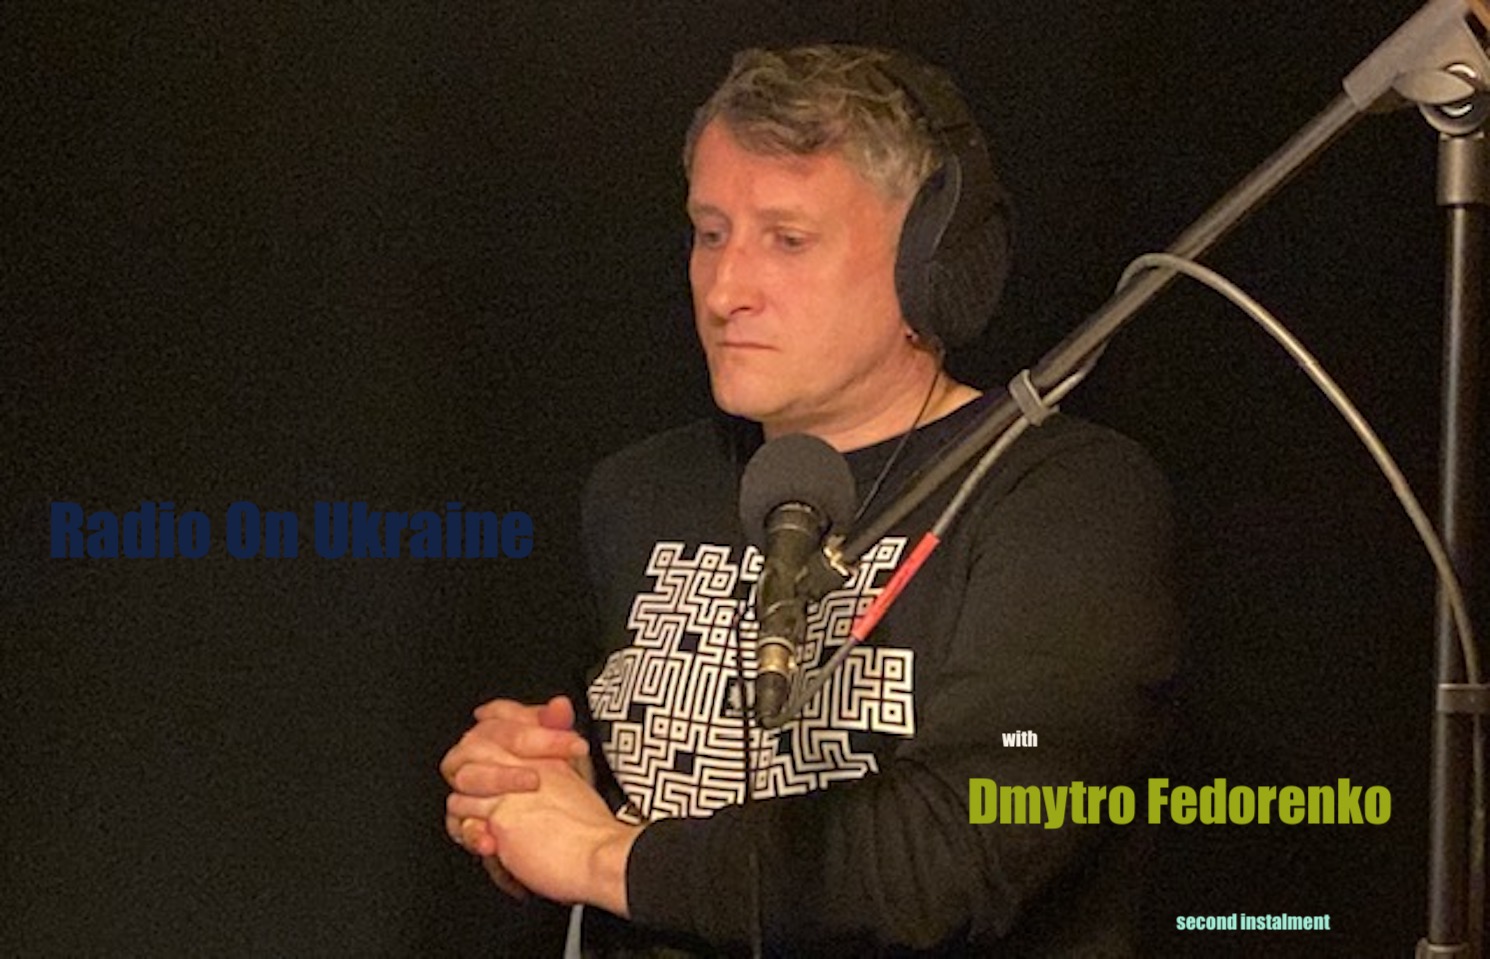 Radio On Ukraine with Dmytro Fedorenko, second instalment